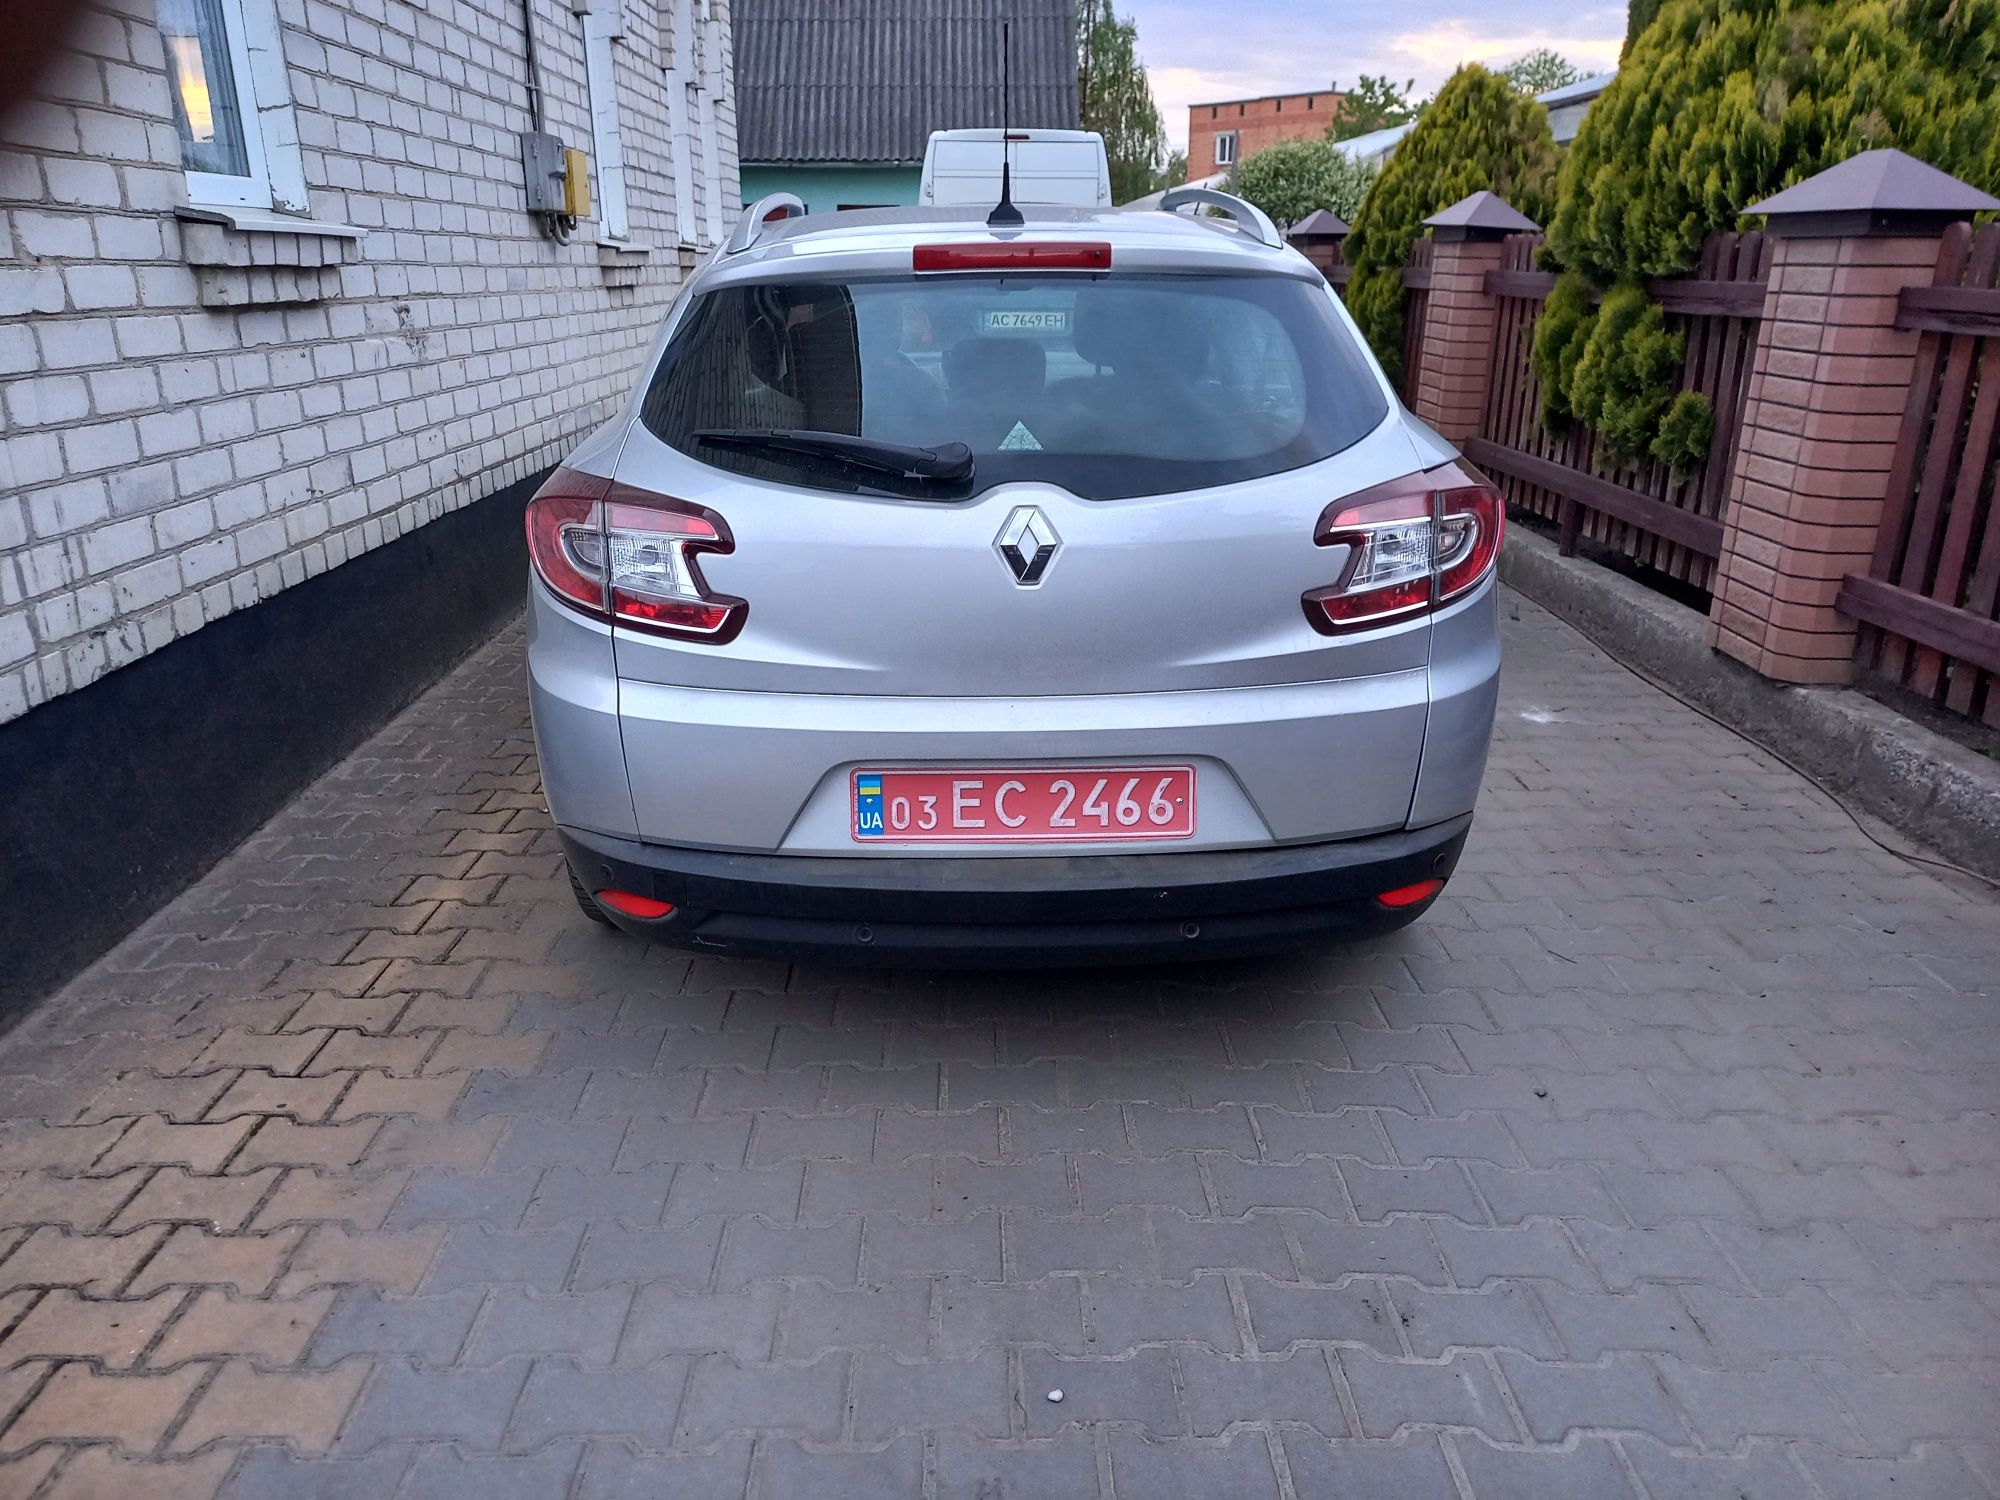 Renault Mègane 1.5 dci 2014 81kw